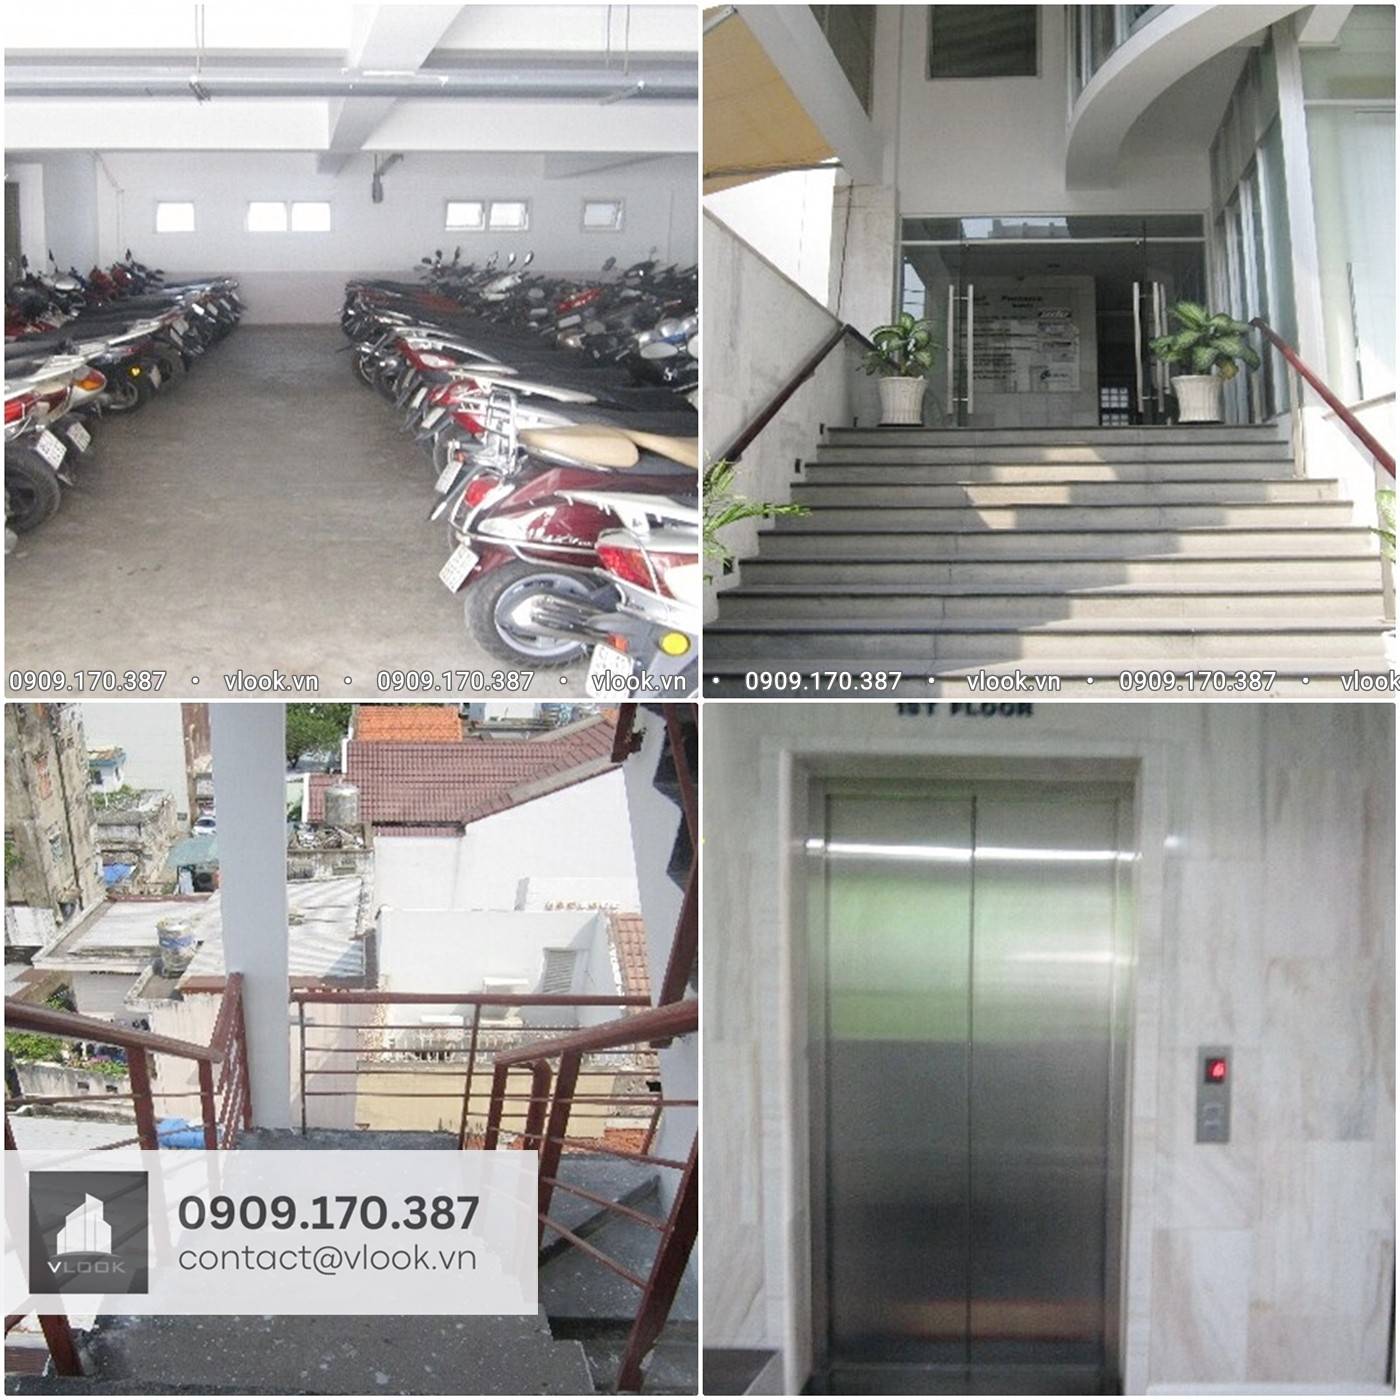 Cao ốc văn phòng cho thuê tòa nhà MNG Building, 38/6N Nguyễn Văn Trỗi, Quận Phú Nhuận, TPHCM - vlook.vn - 0909 170 387